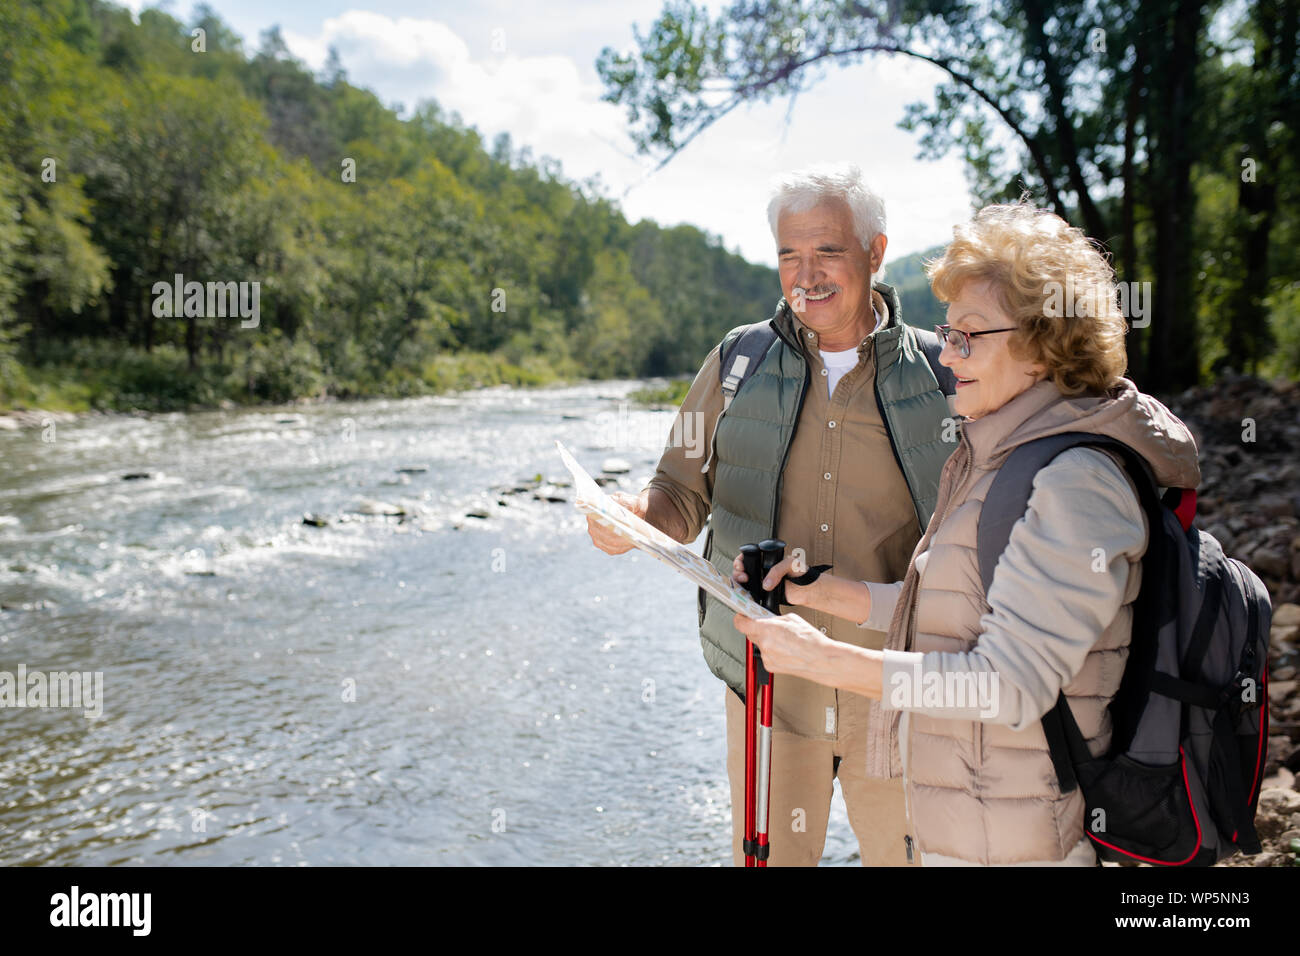 Attivo coppia senior con zaini guardando mappa mentre in piedi dal grande fiume Foto Stock